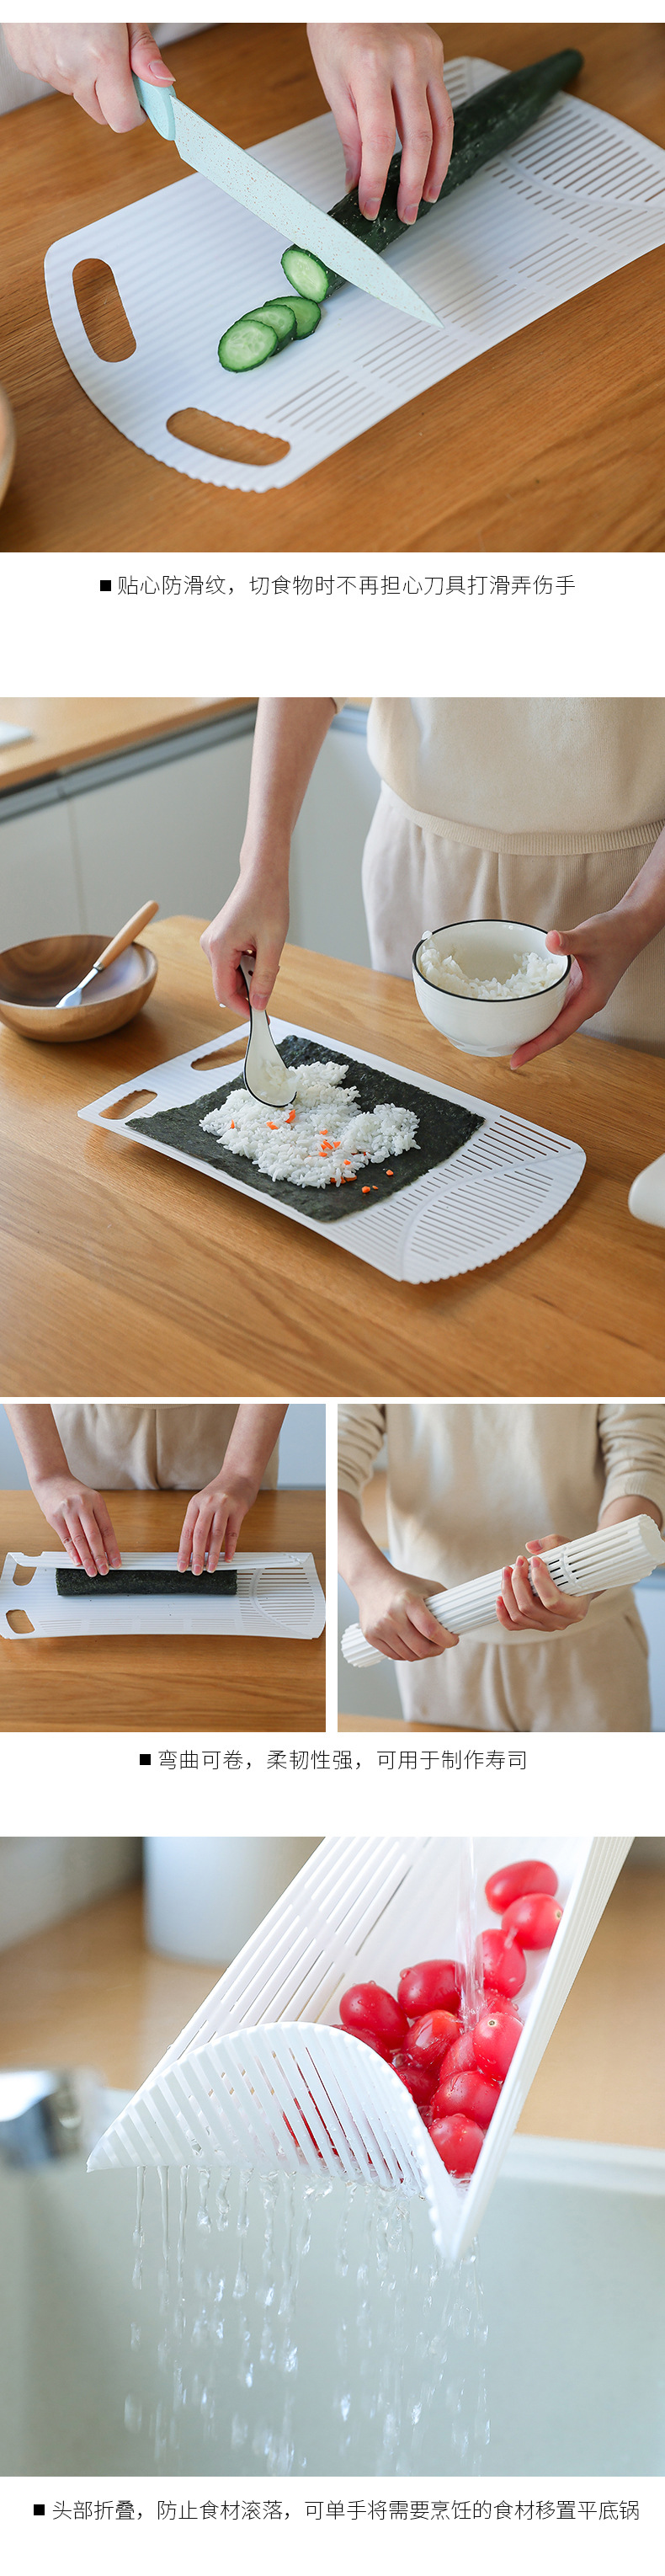 多功能料理砧板 可彎曲切菜板 創意手卷料理砧板 瀝水砧板2